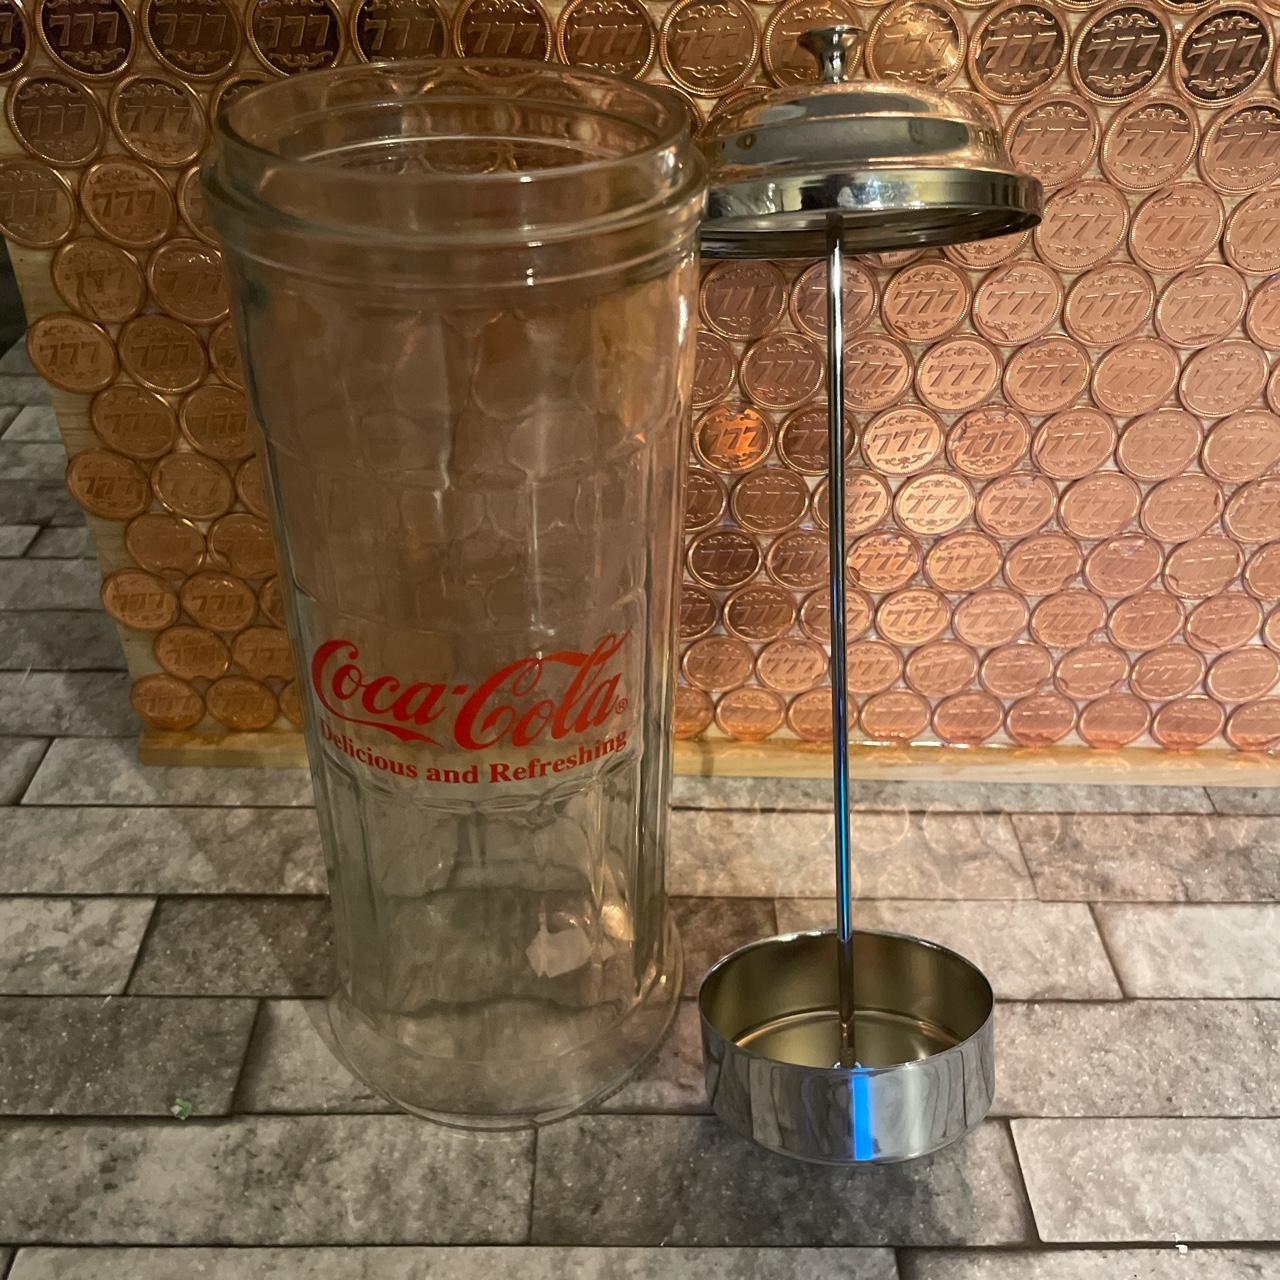 Coca-Cola Straw Dispenser